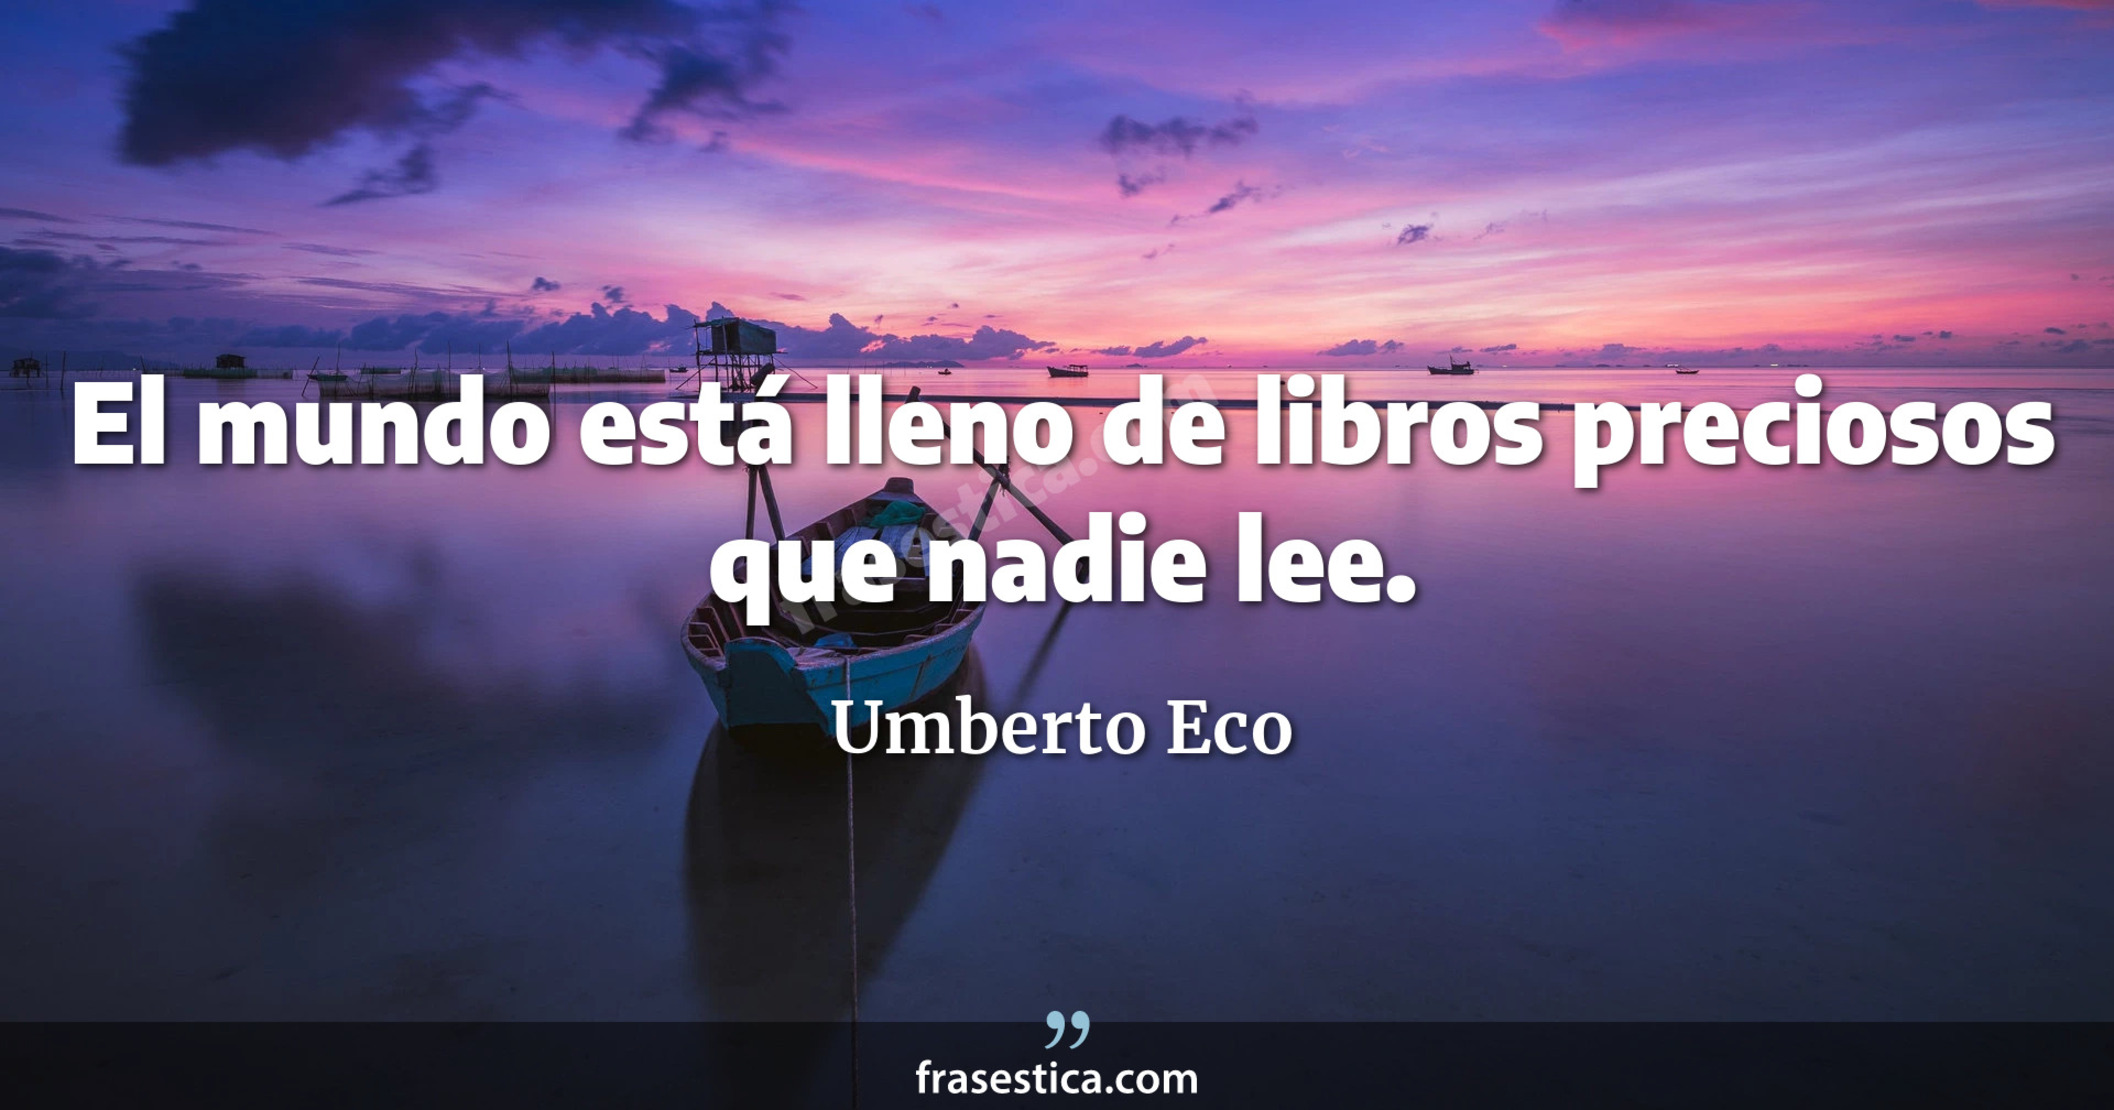 El mundo está lleno de libros preciosos que nadie lee. - Umberto Eco